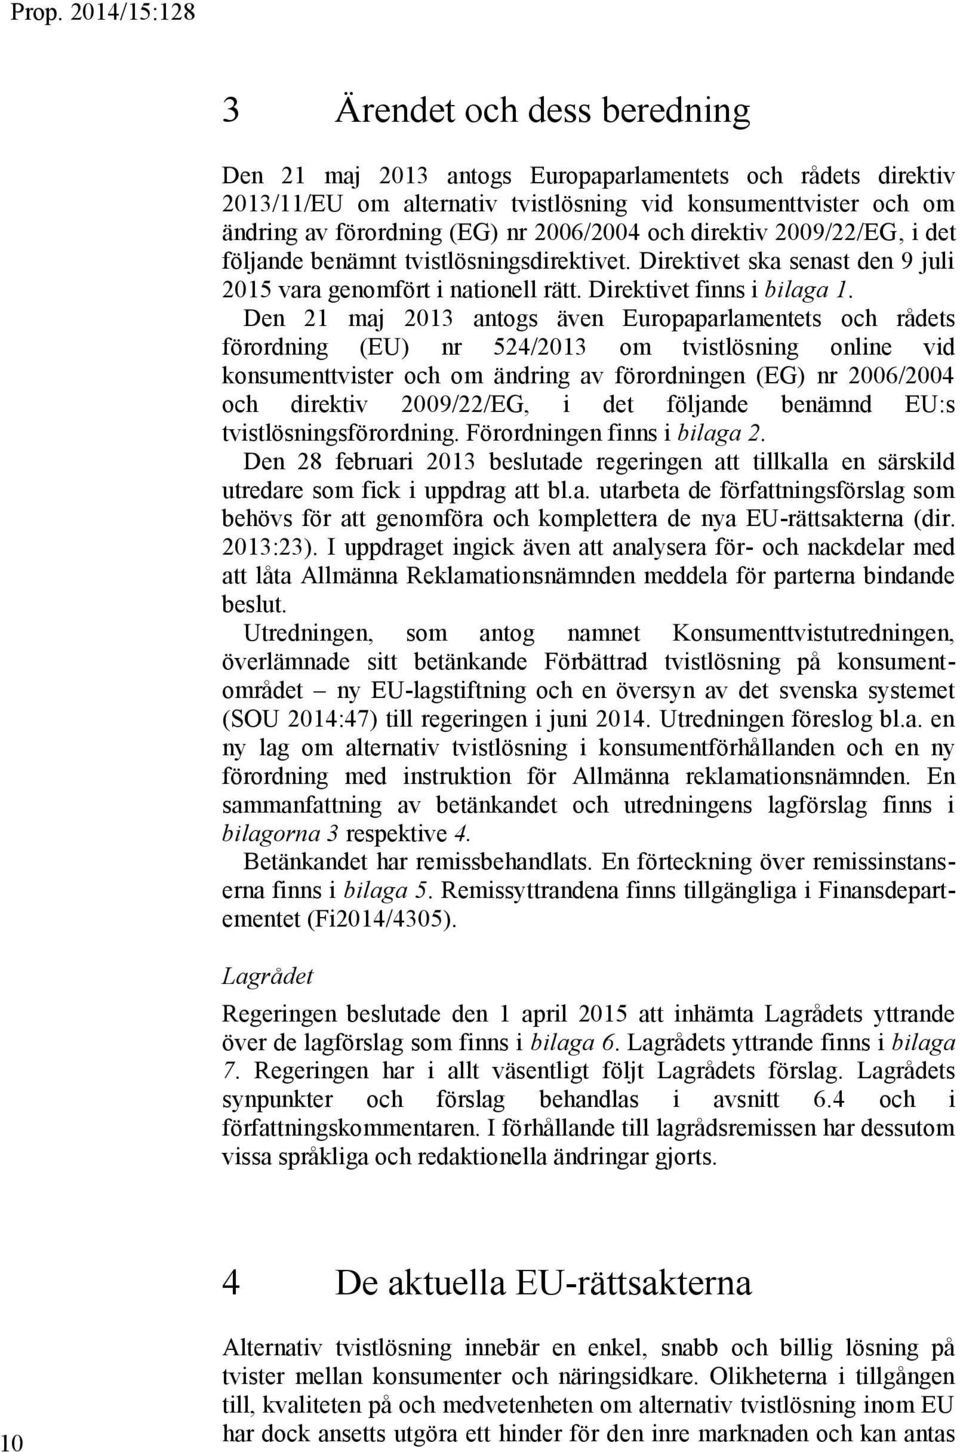 Den 21 maj 2013 antogs även Europaparlamentets och rådets förordning (EU) nr 524/2013 om tvistlösning online vid konsumenttvister och om ändring av förordningen (EG) nr 2006/2004 och direktiv